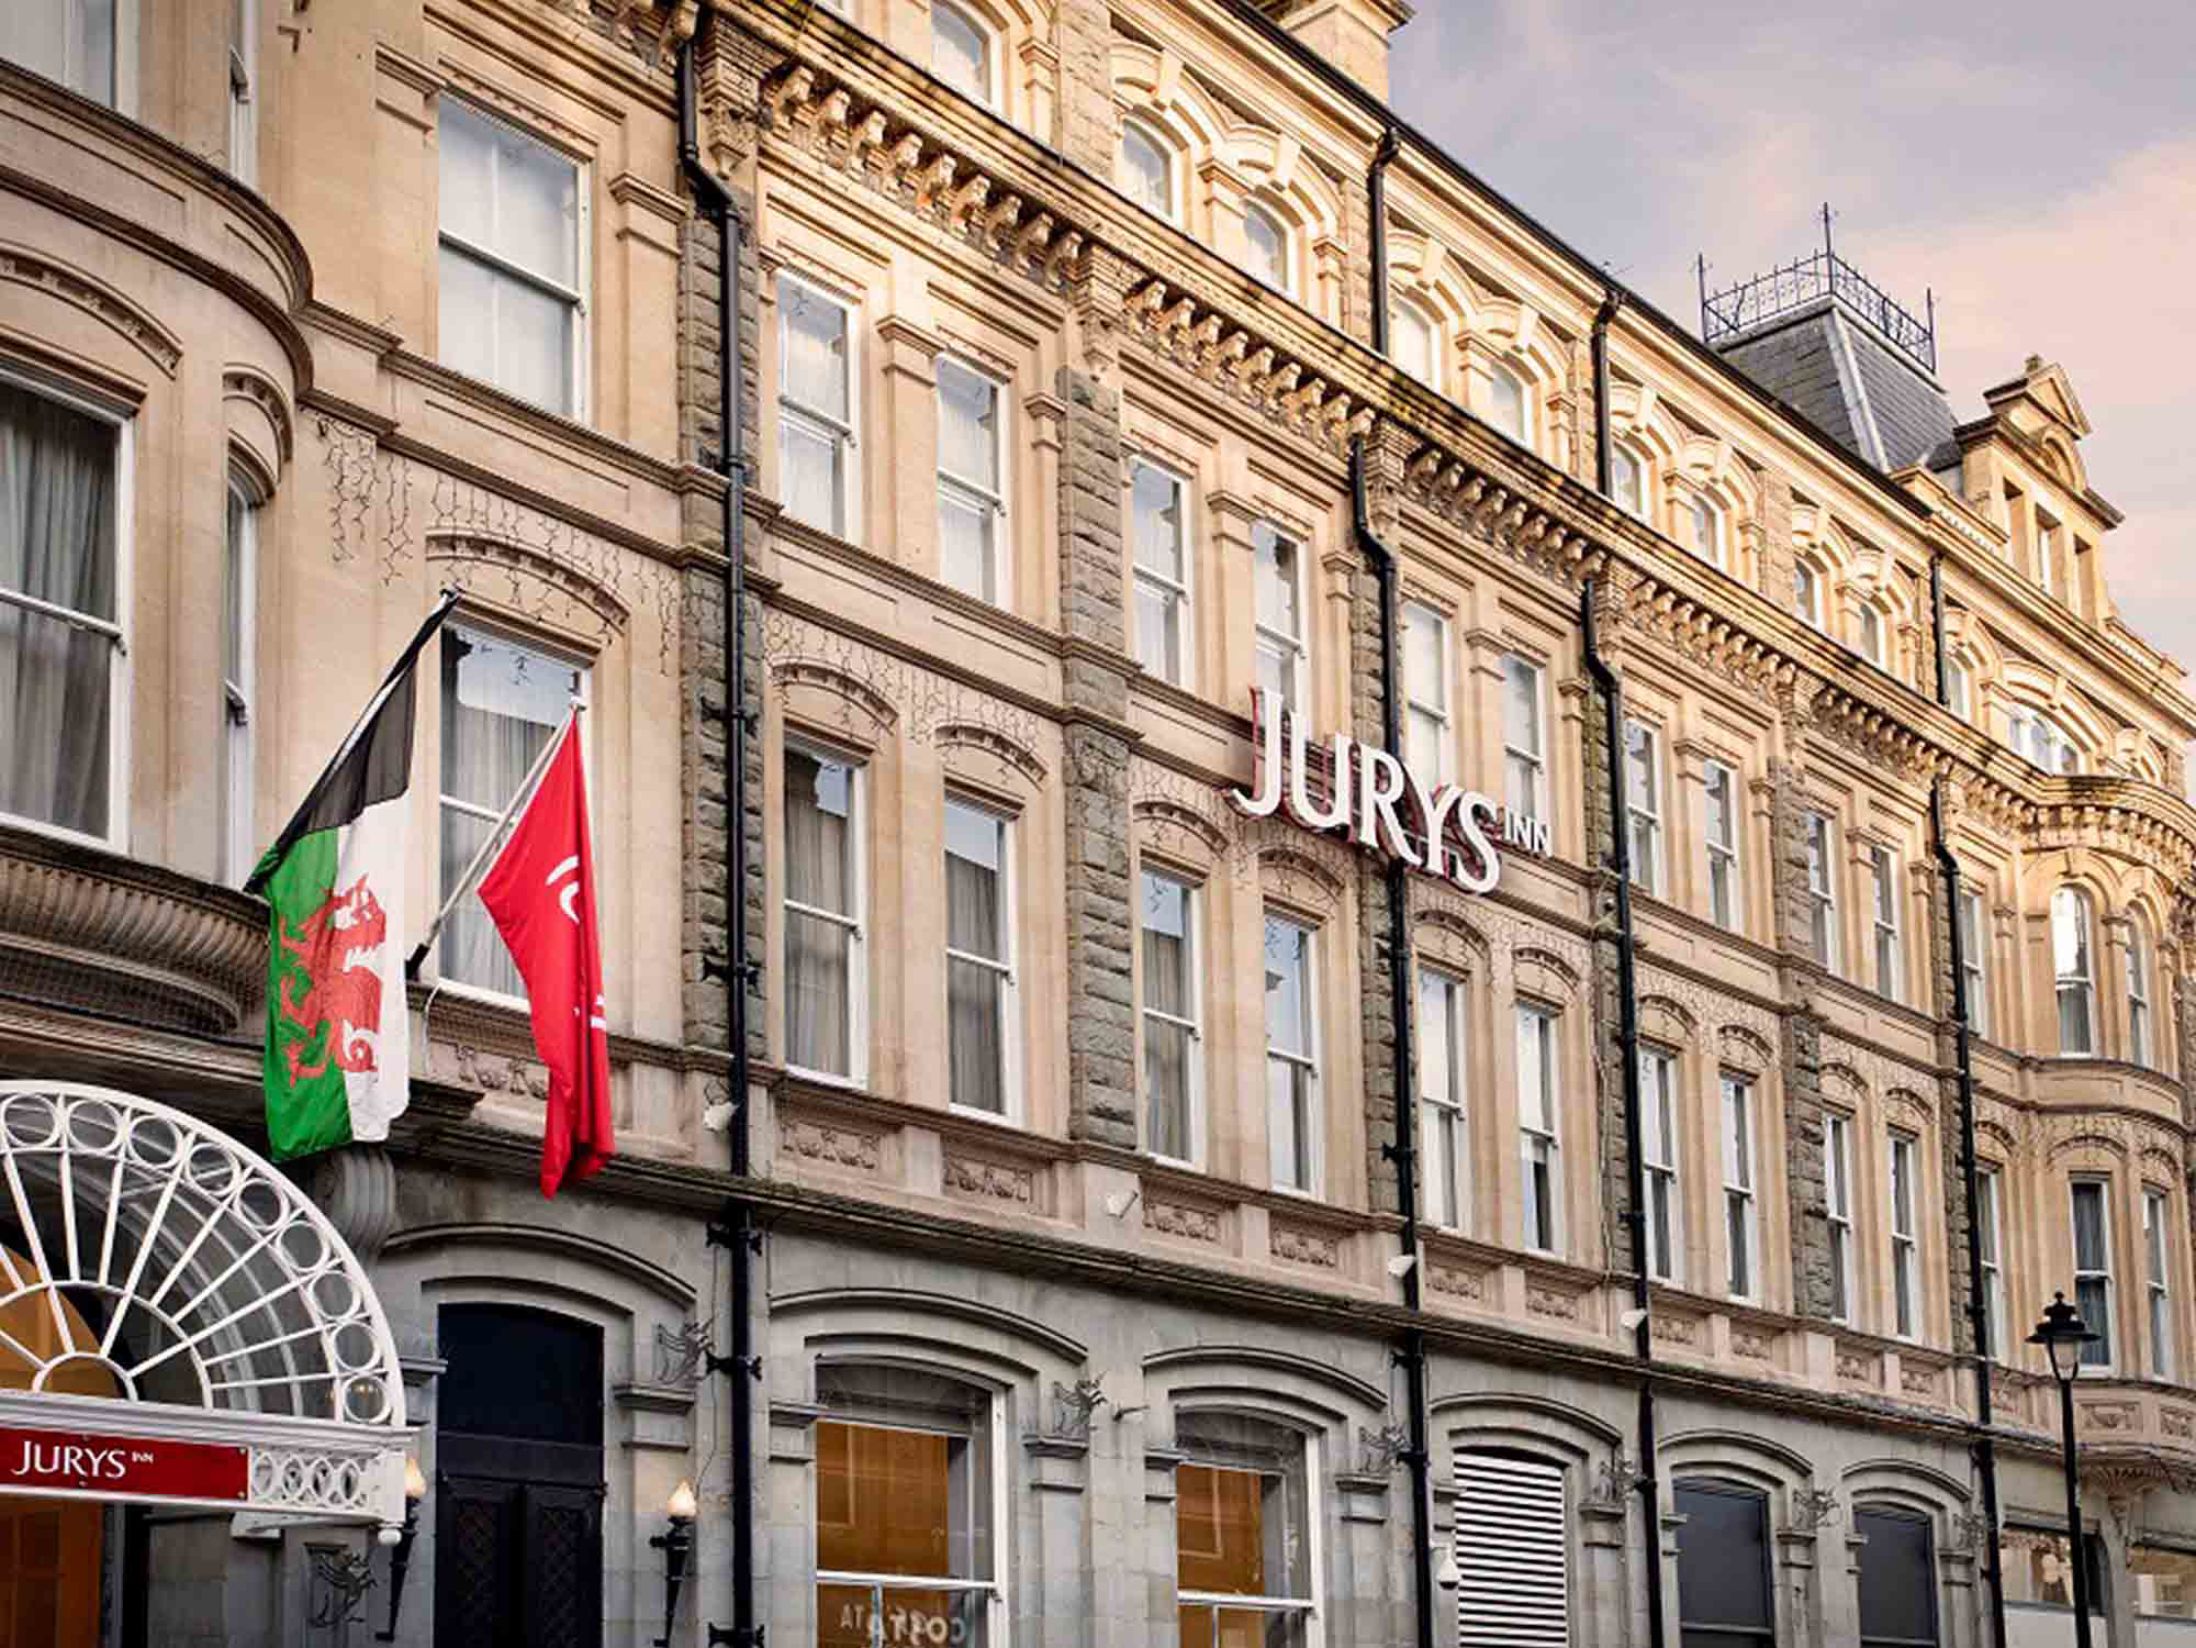 Jurys Inn - Best Hotels in Cardiff City Centre